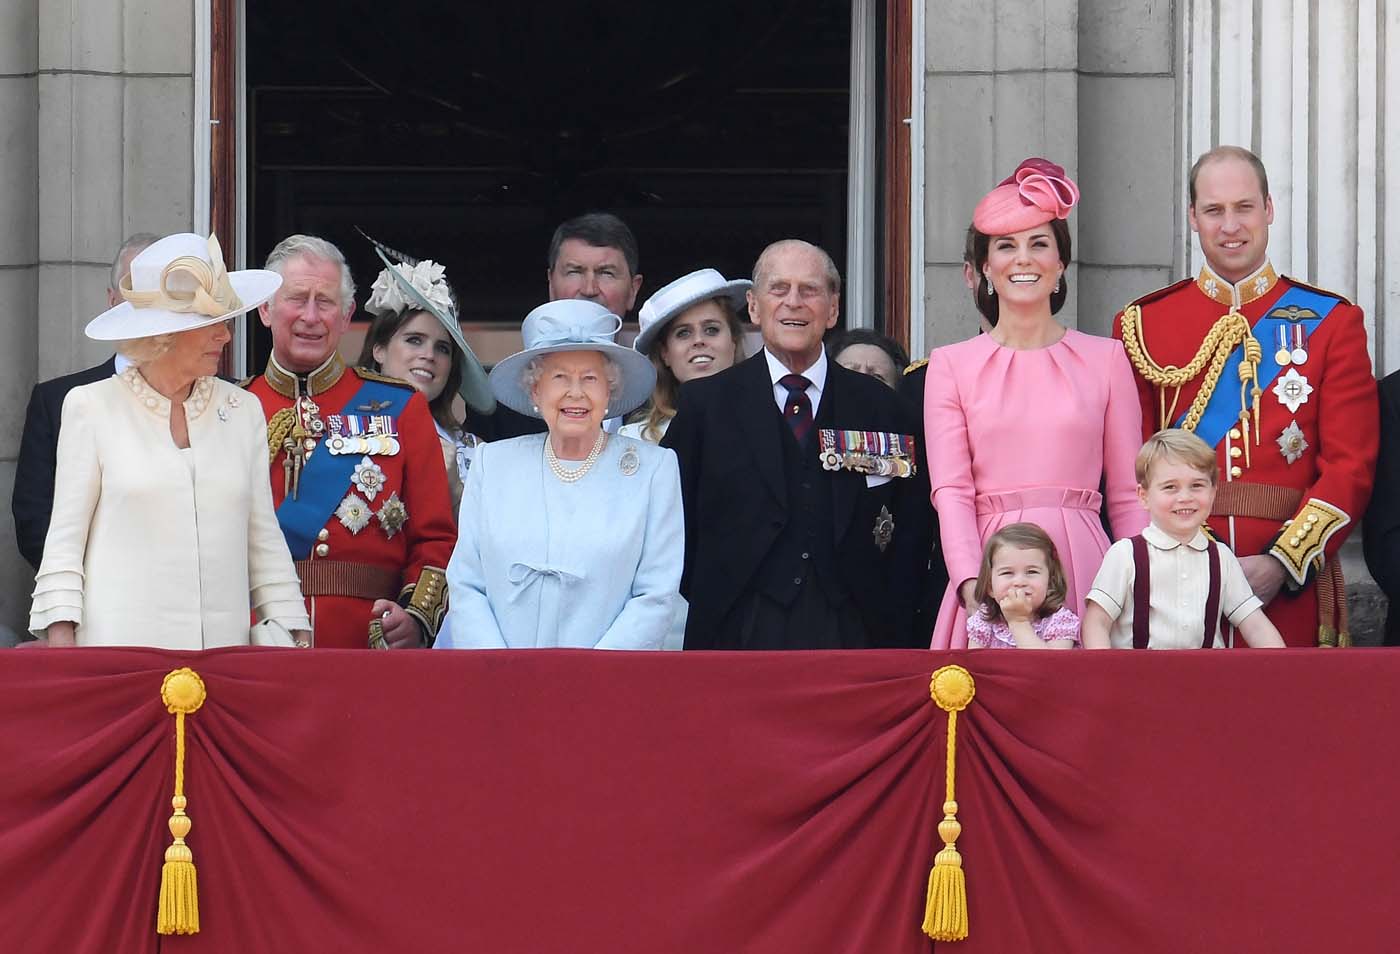 La familia real aparece en el balcón tras minuto de silencio por víctimas de incendio en Londres (fotos)